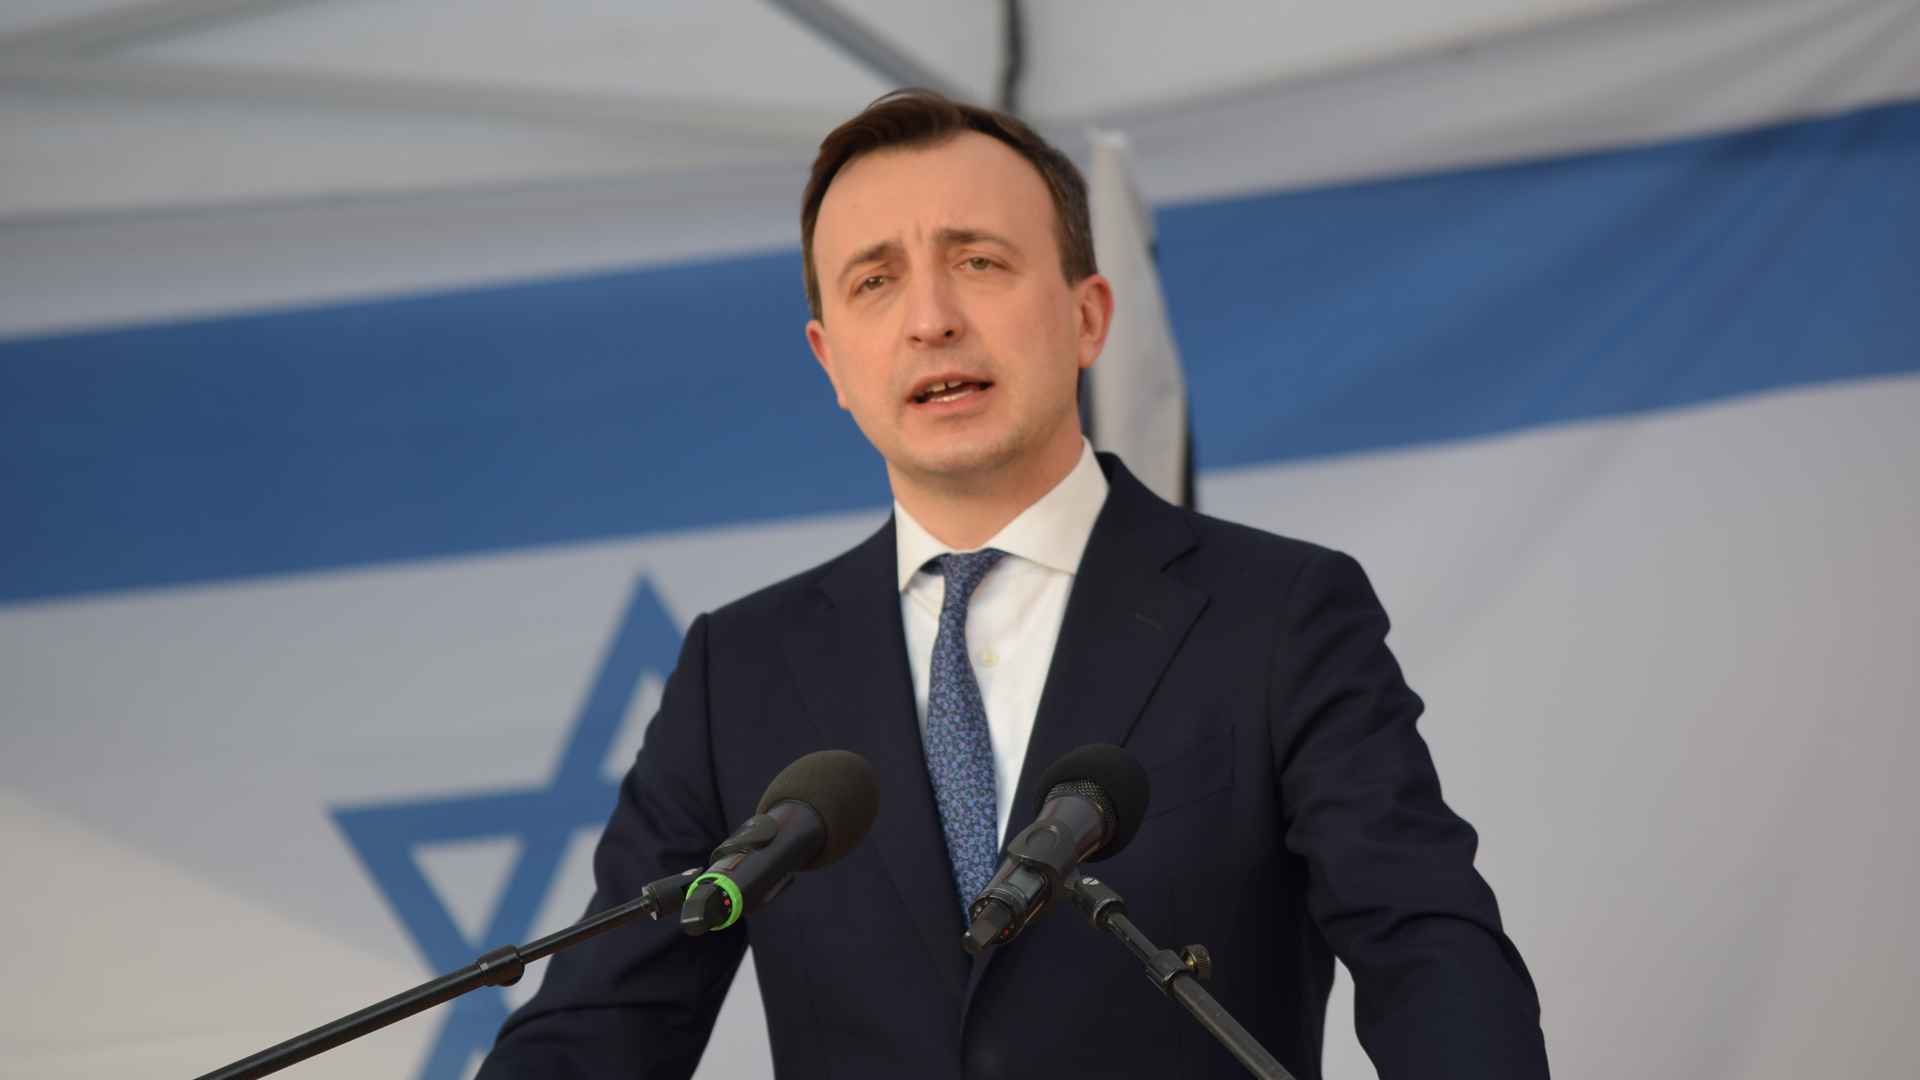 Paul Ziemiak betont die deutsche Unterstützung für Israel